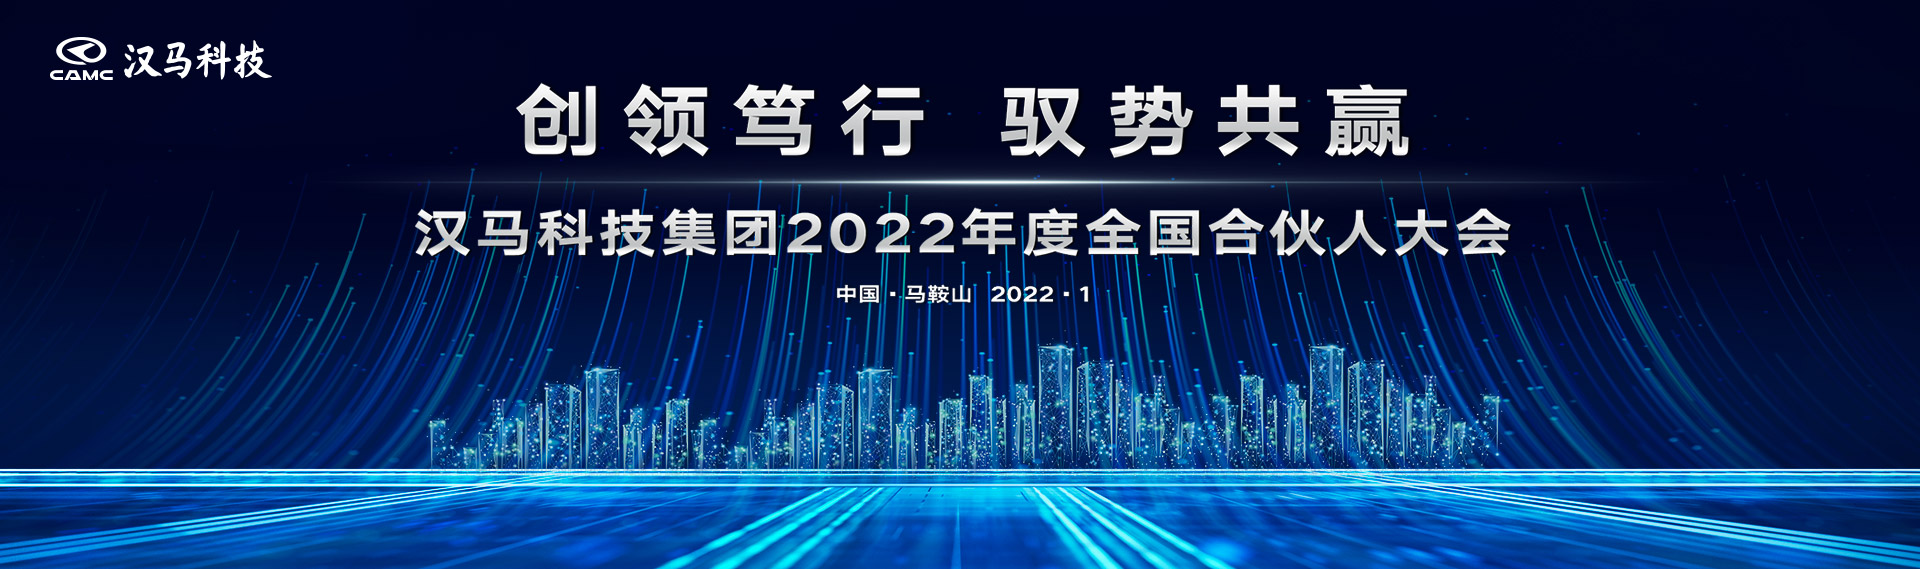 创领笃行驭势共赢 汉马科技集团2022年度全国合伙人大会